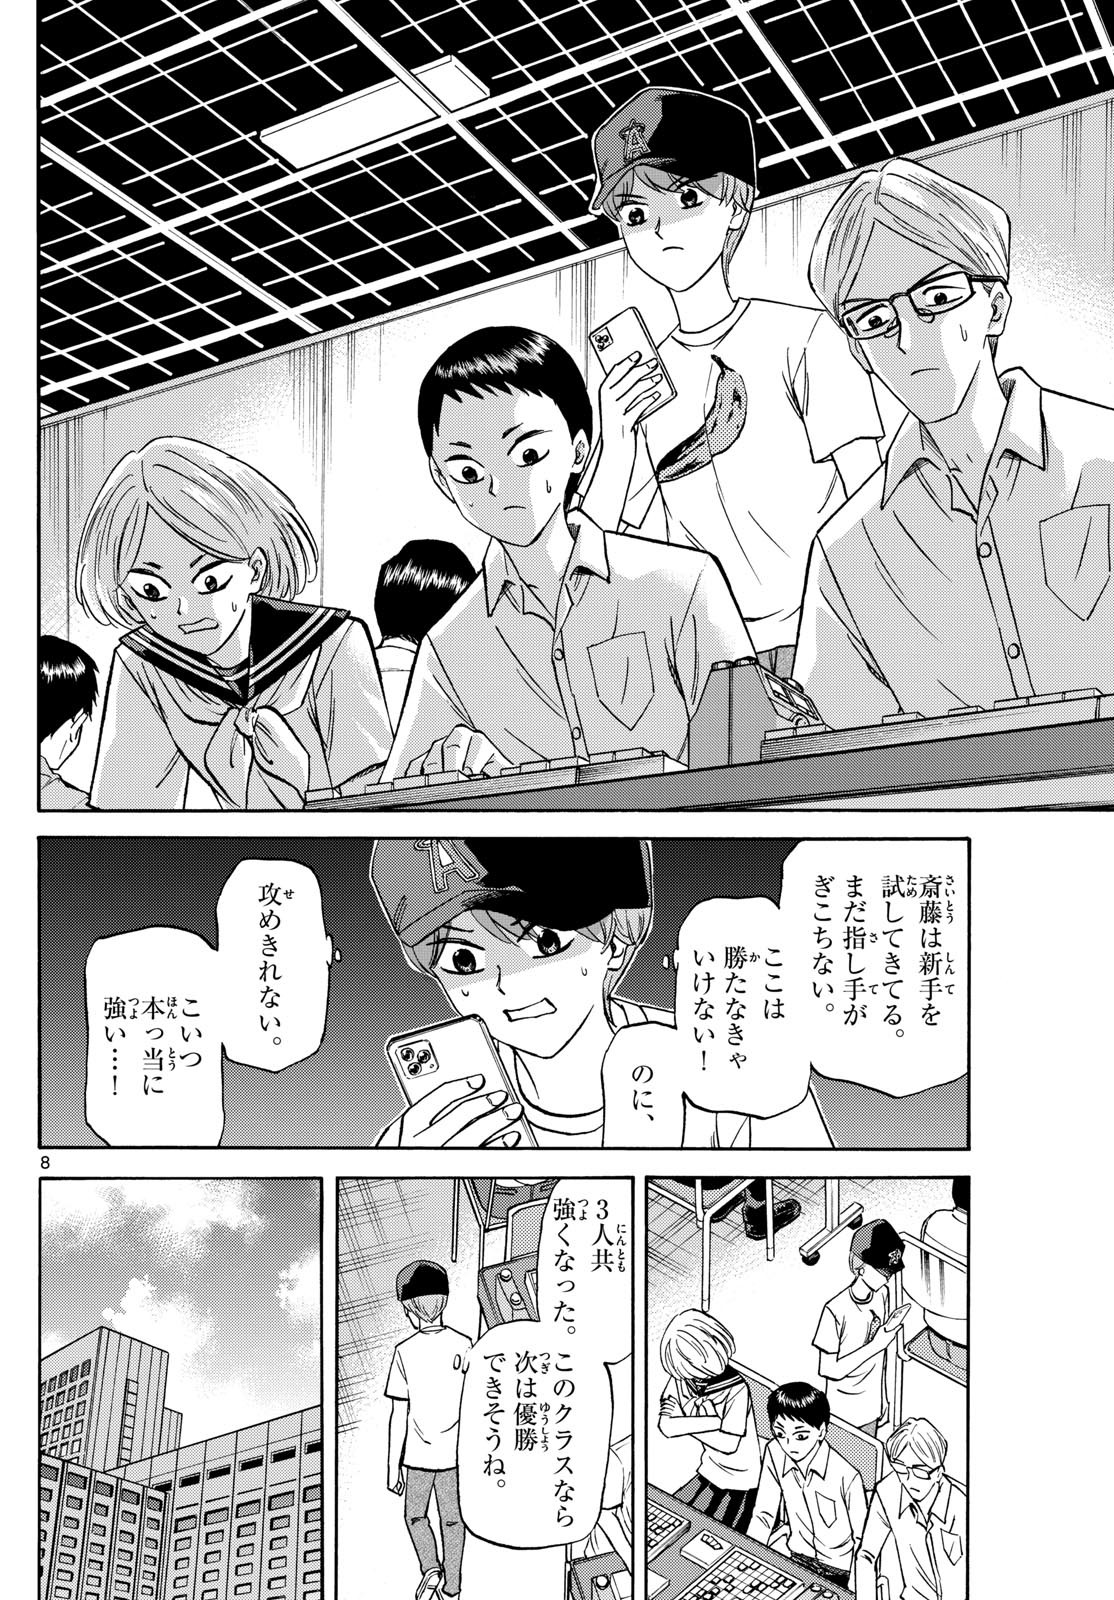 Ryu-to-Ichigo - Chapter 152 - Page 8